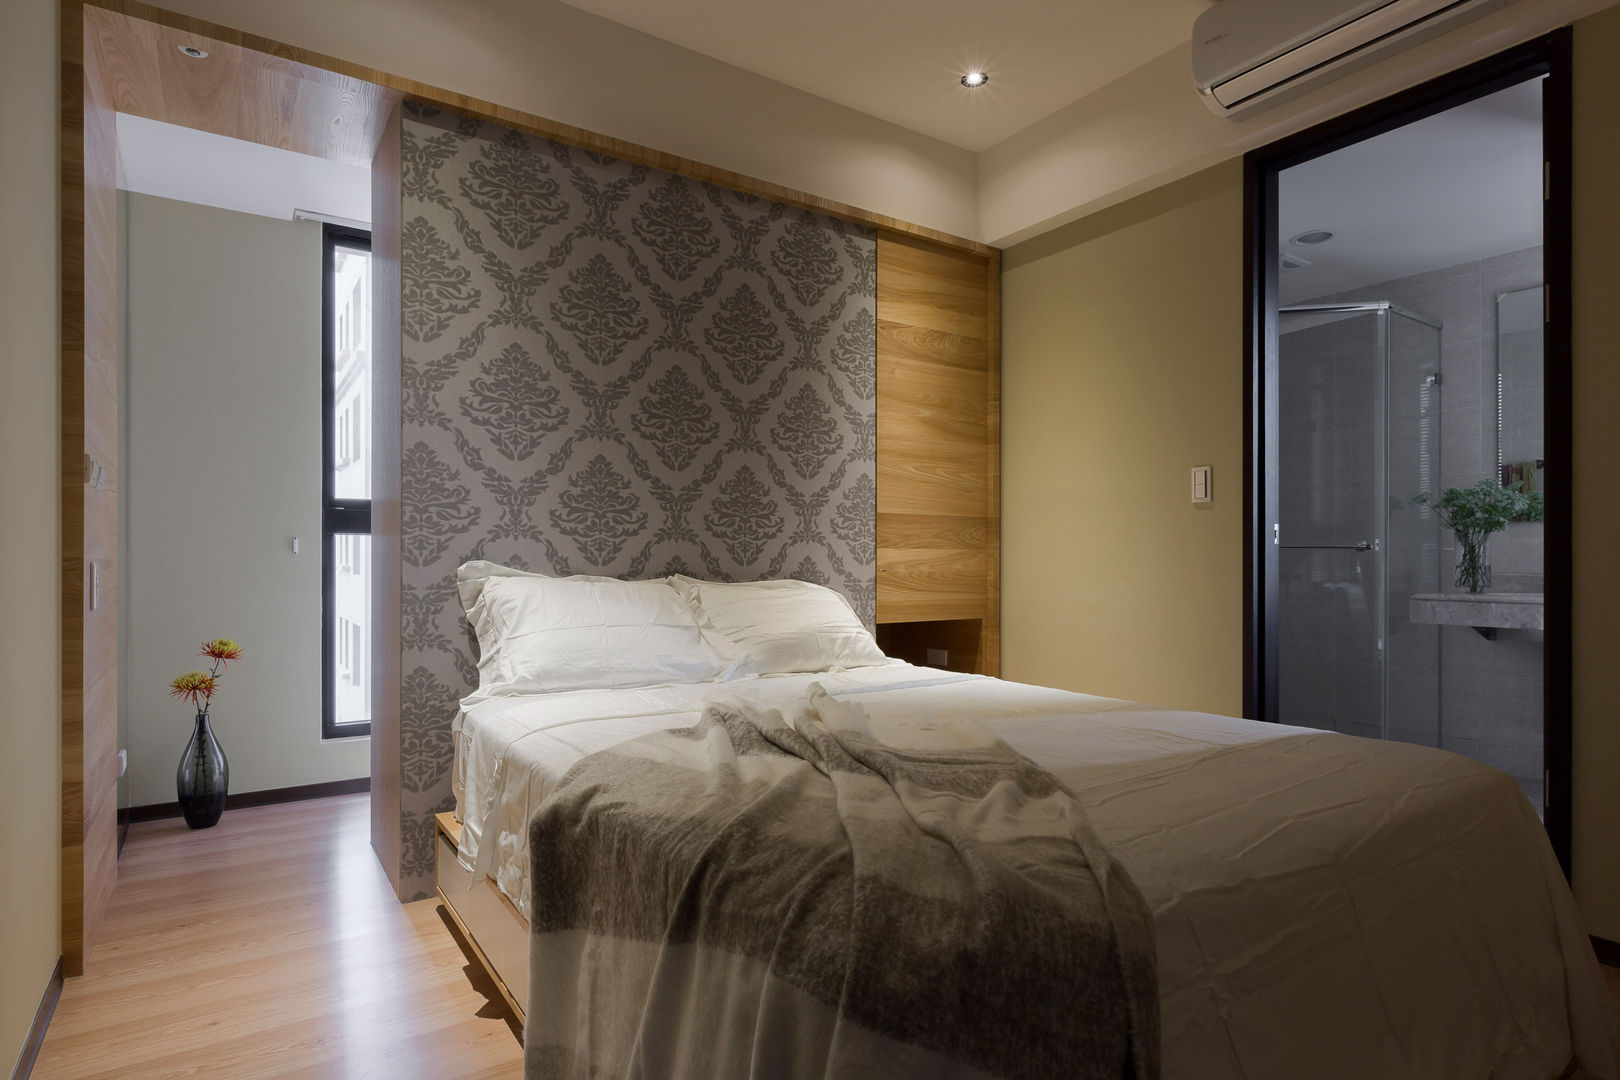 賀澤室內設計 HOZO_interior_design homify Modern style bedroom